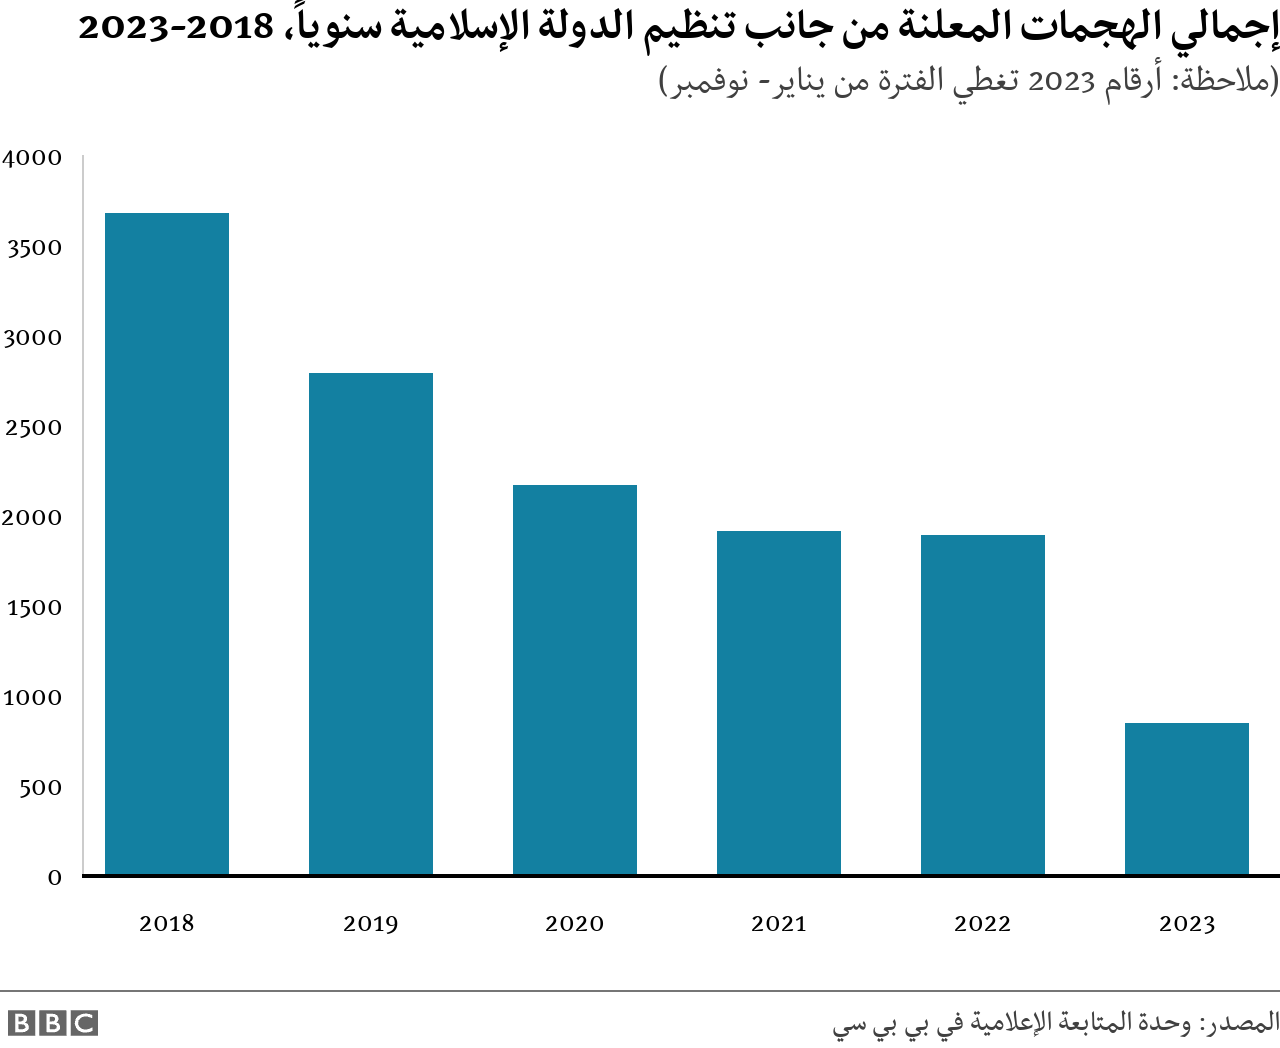 مخطط غرافيك يظهر إجمالي هجمات تنظيم الدولة الإسلامية خلال الفترة من 2018 إلى 2023